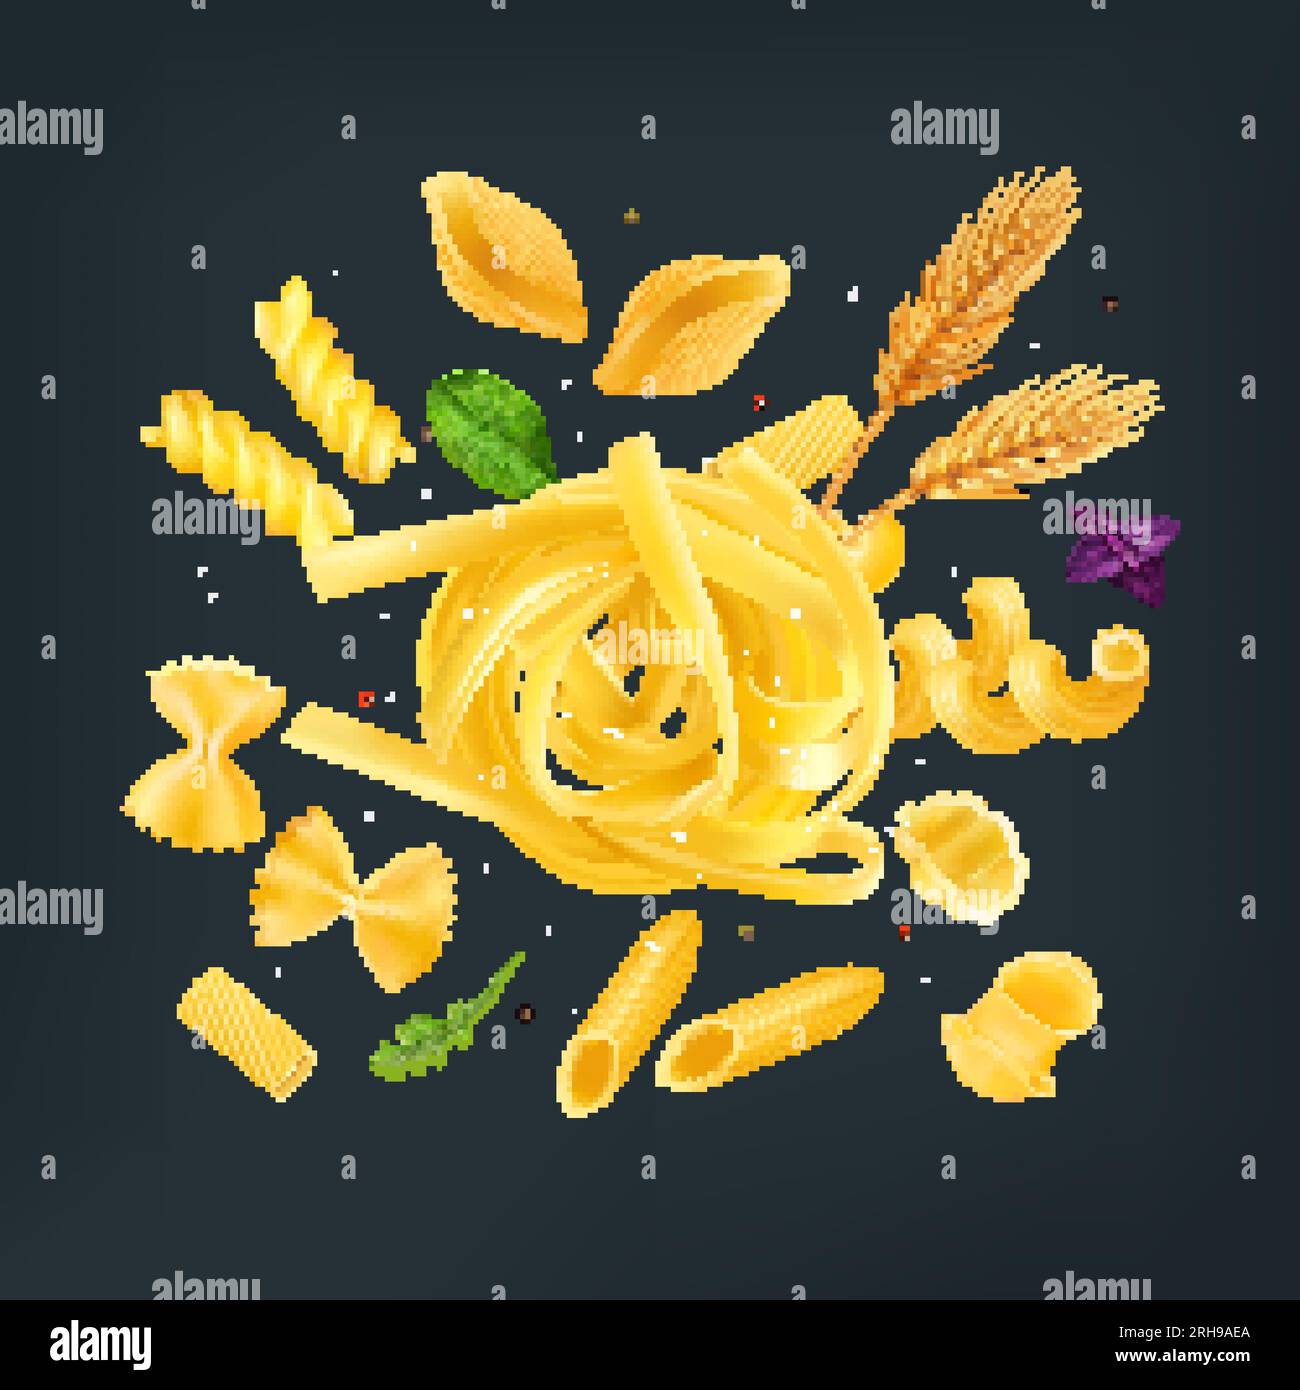 Composizione di pasta italiana di grano con tagliatelle di farfalle gnocchi rigatoni fusulli ed erbe su sfondo nero realistica illustrazione vettoriale Illustrazione Vettoriale